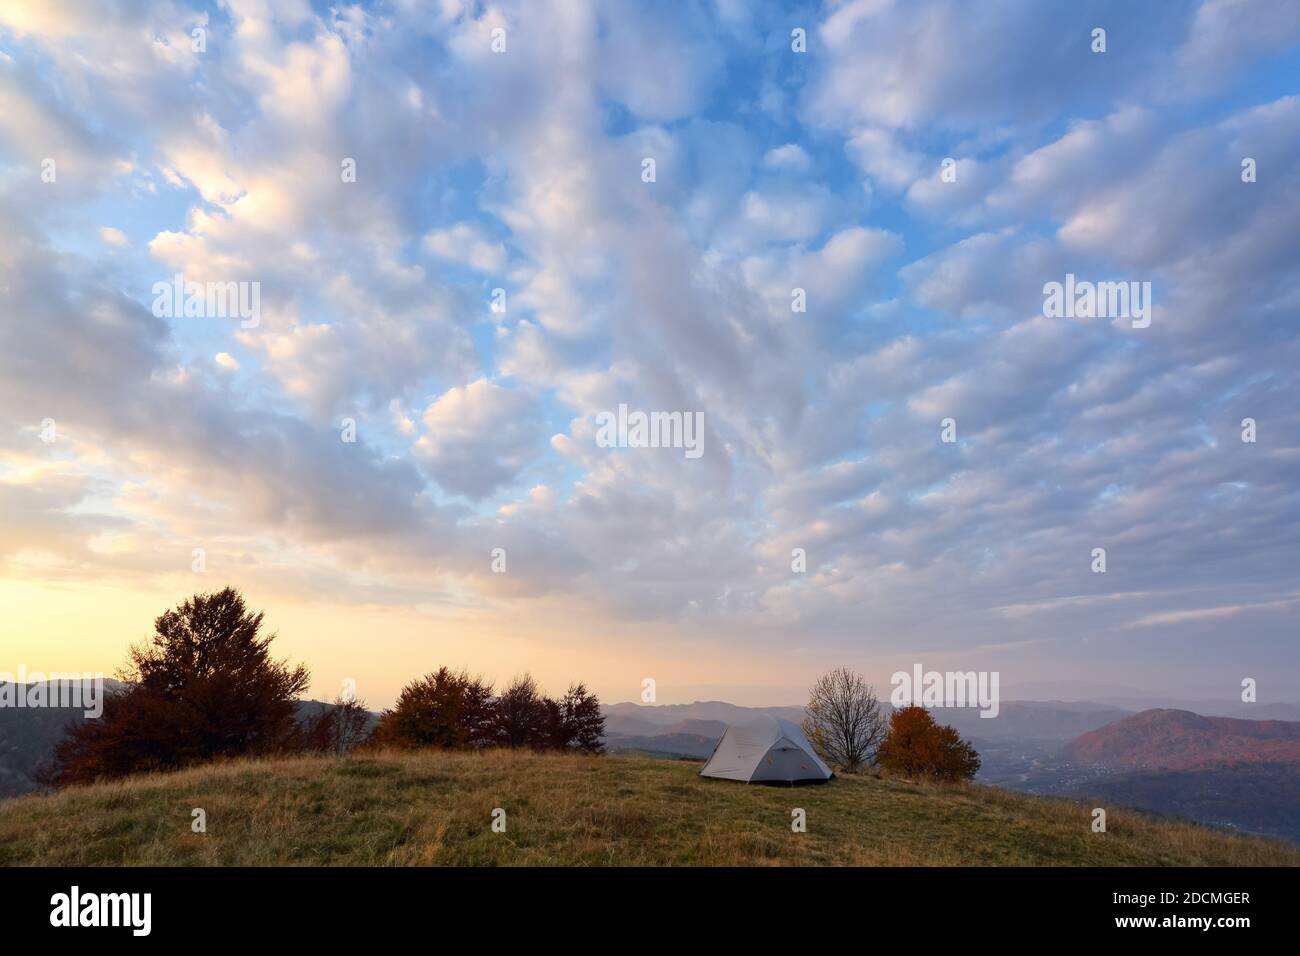 Tenda si erge sul prato. Alba. Cielo con nuvole. Incredibile paesaggio rurale autunno. Campeggio turistico luogo di riposo. Località Carpazi, Ucraina, Europa. Foto Stock